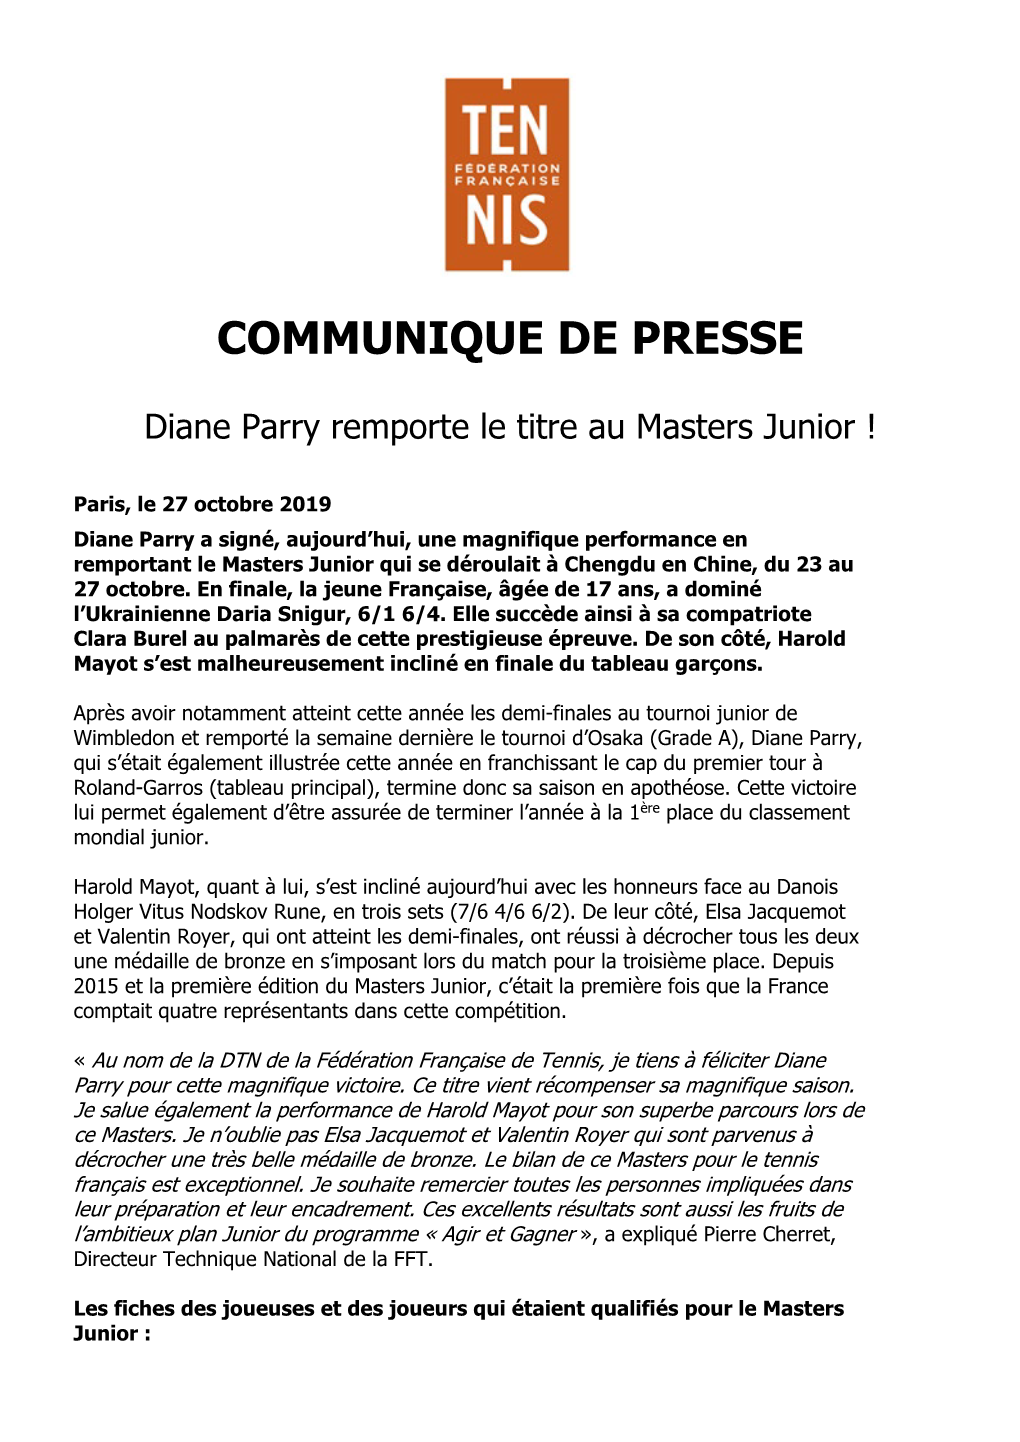 Diane Parry Remporte Le Titre Au Masters Junior !